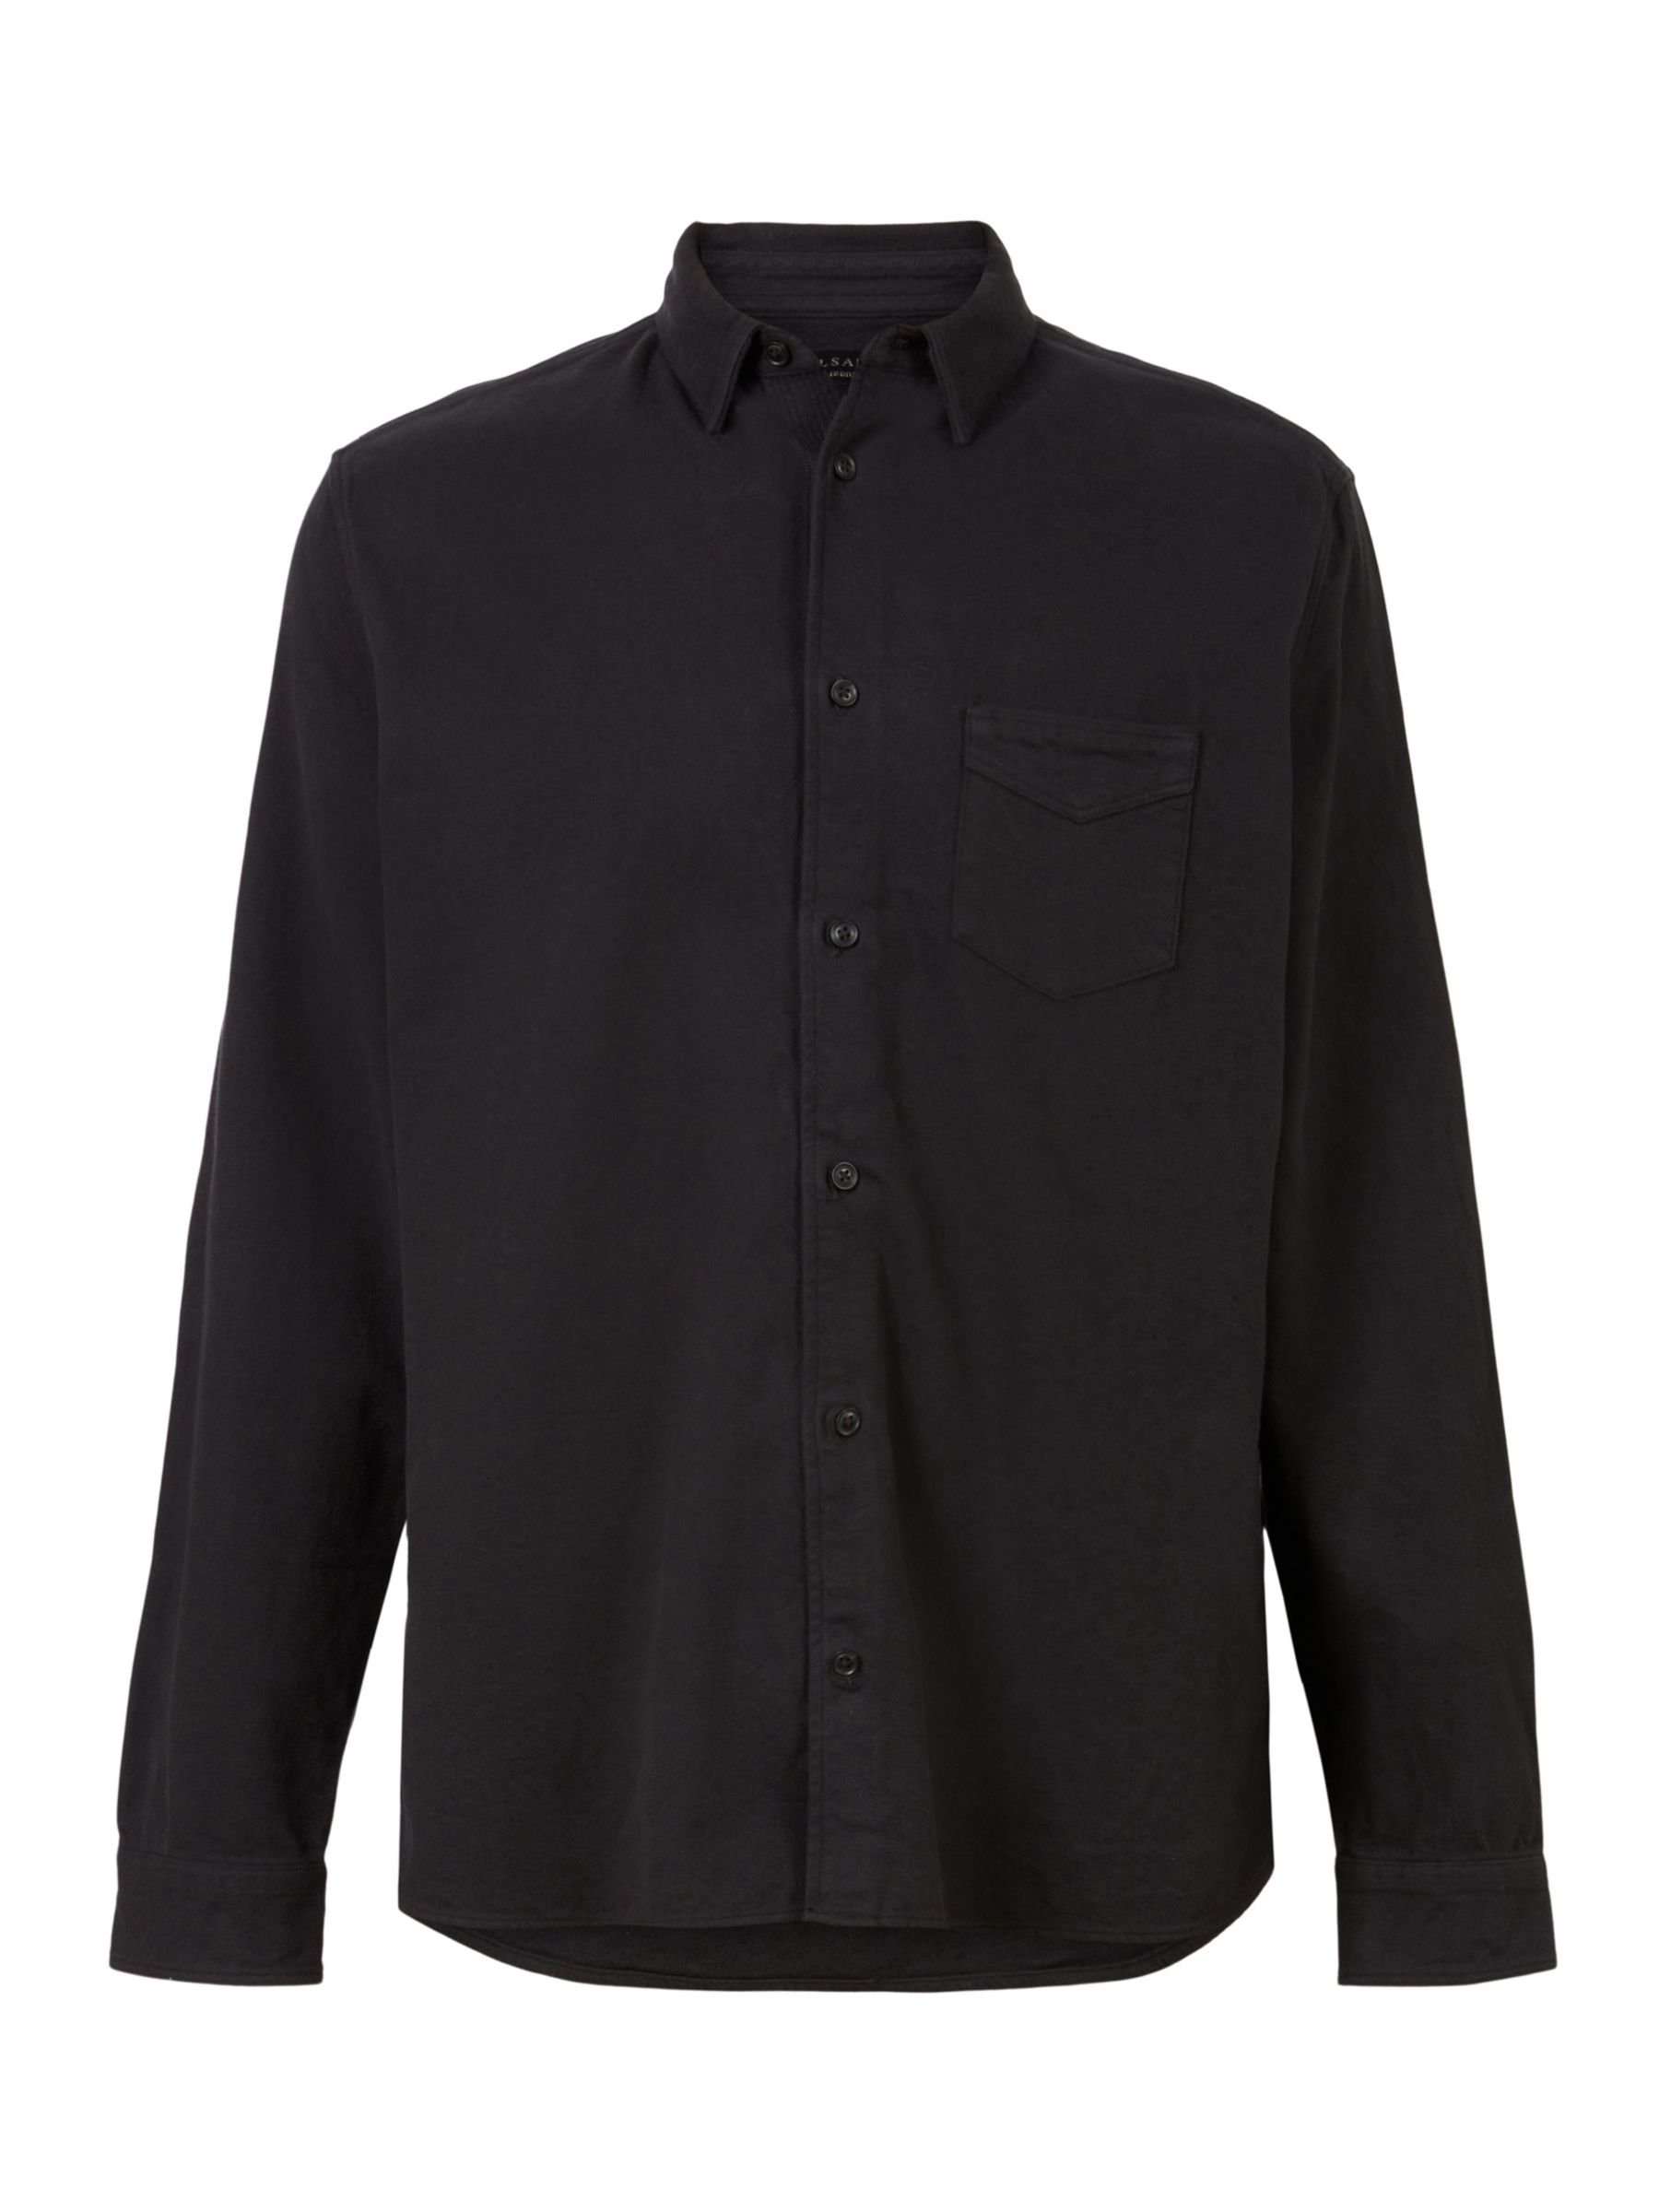 AllSaints Arden Brushed Flannel Shirt, Jet Black at John Lewis & Partners